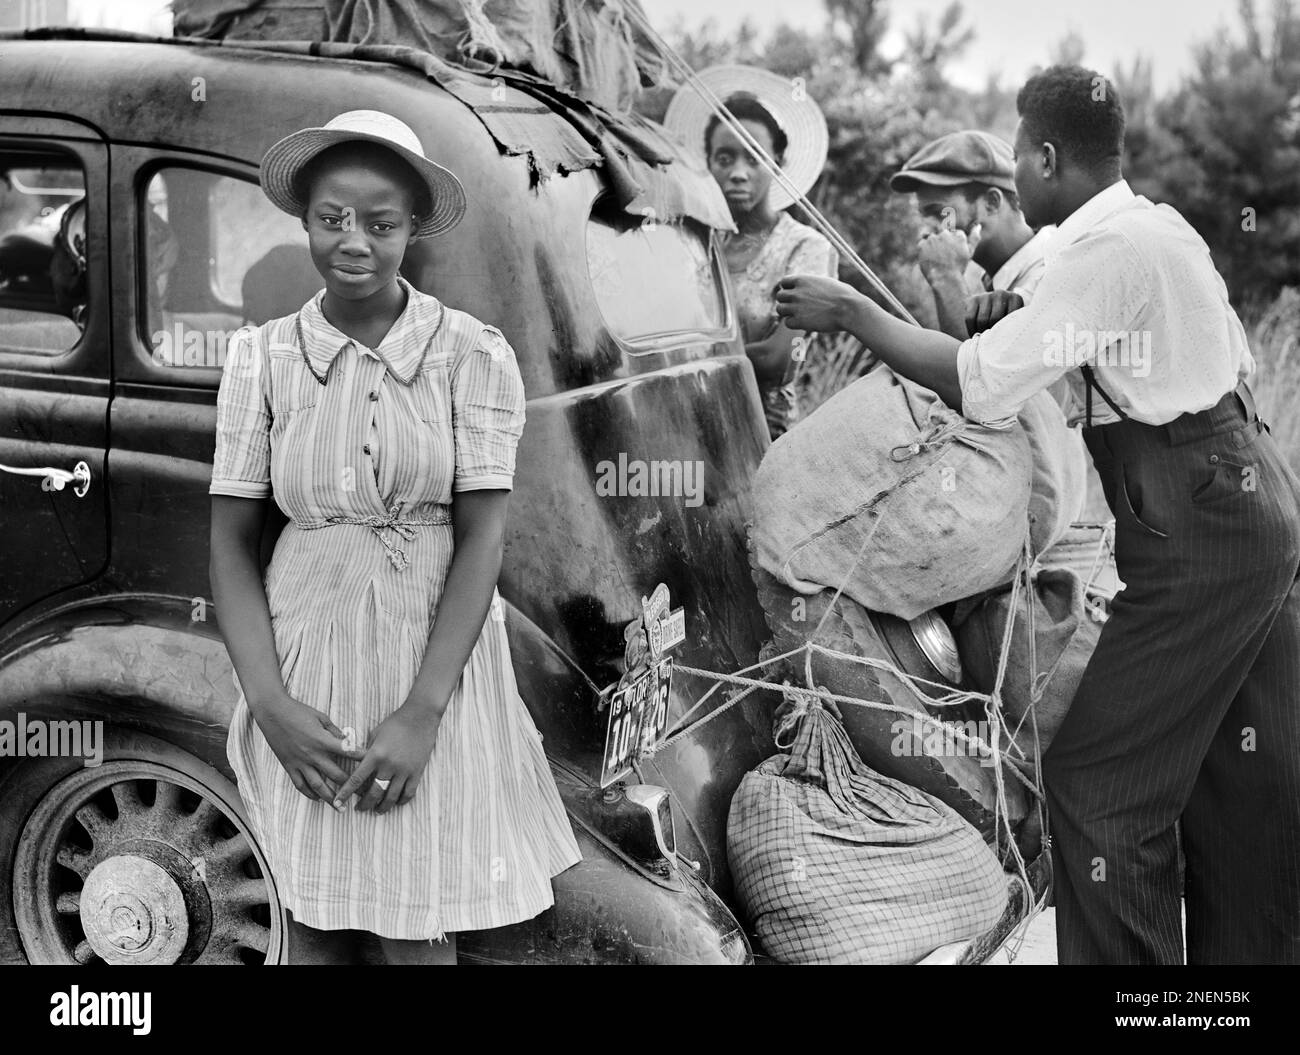 Groupe de migrants de Floride sur leur chemin à Cranberry, New Jersey, pour cueillir des pommes de terre, près de Shawboro, Caroline du Nord, États-Unis, Jack Delano, États-Unis Administration de la sécurité agricole, juillet 1940 Banque D'Images